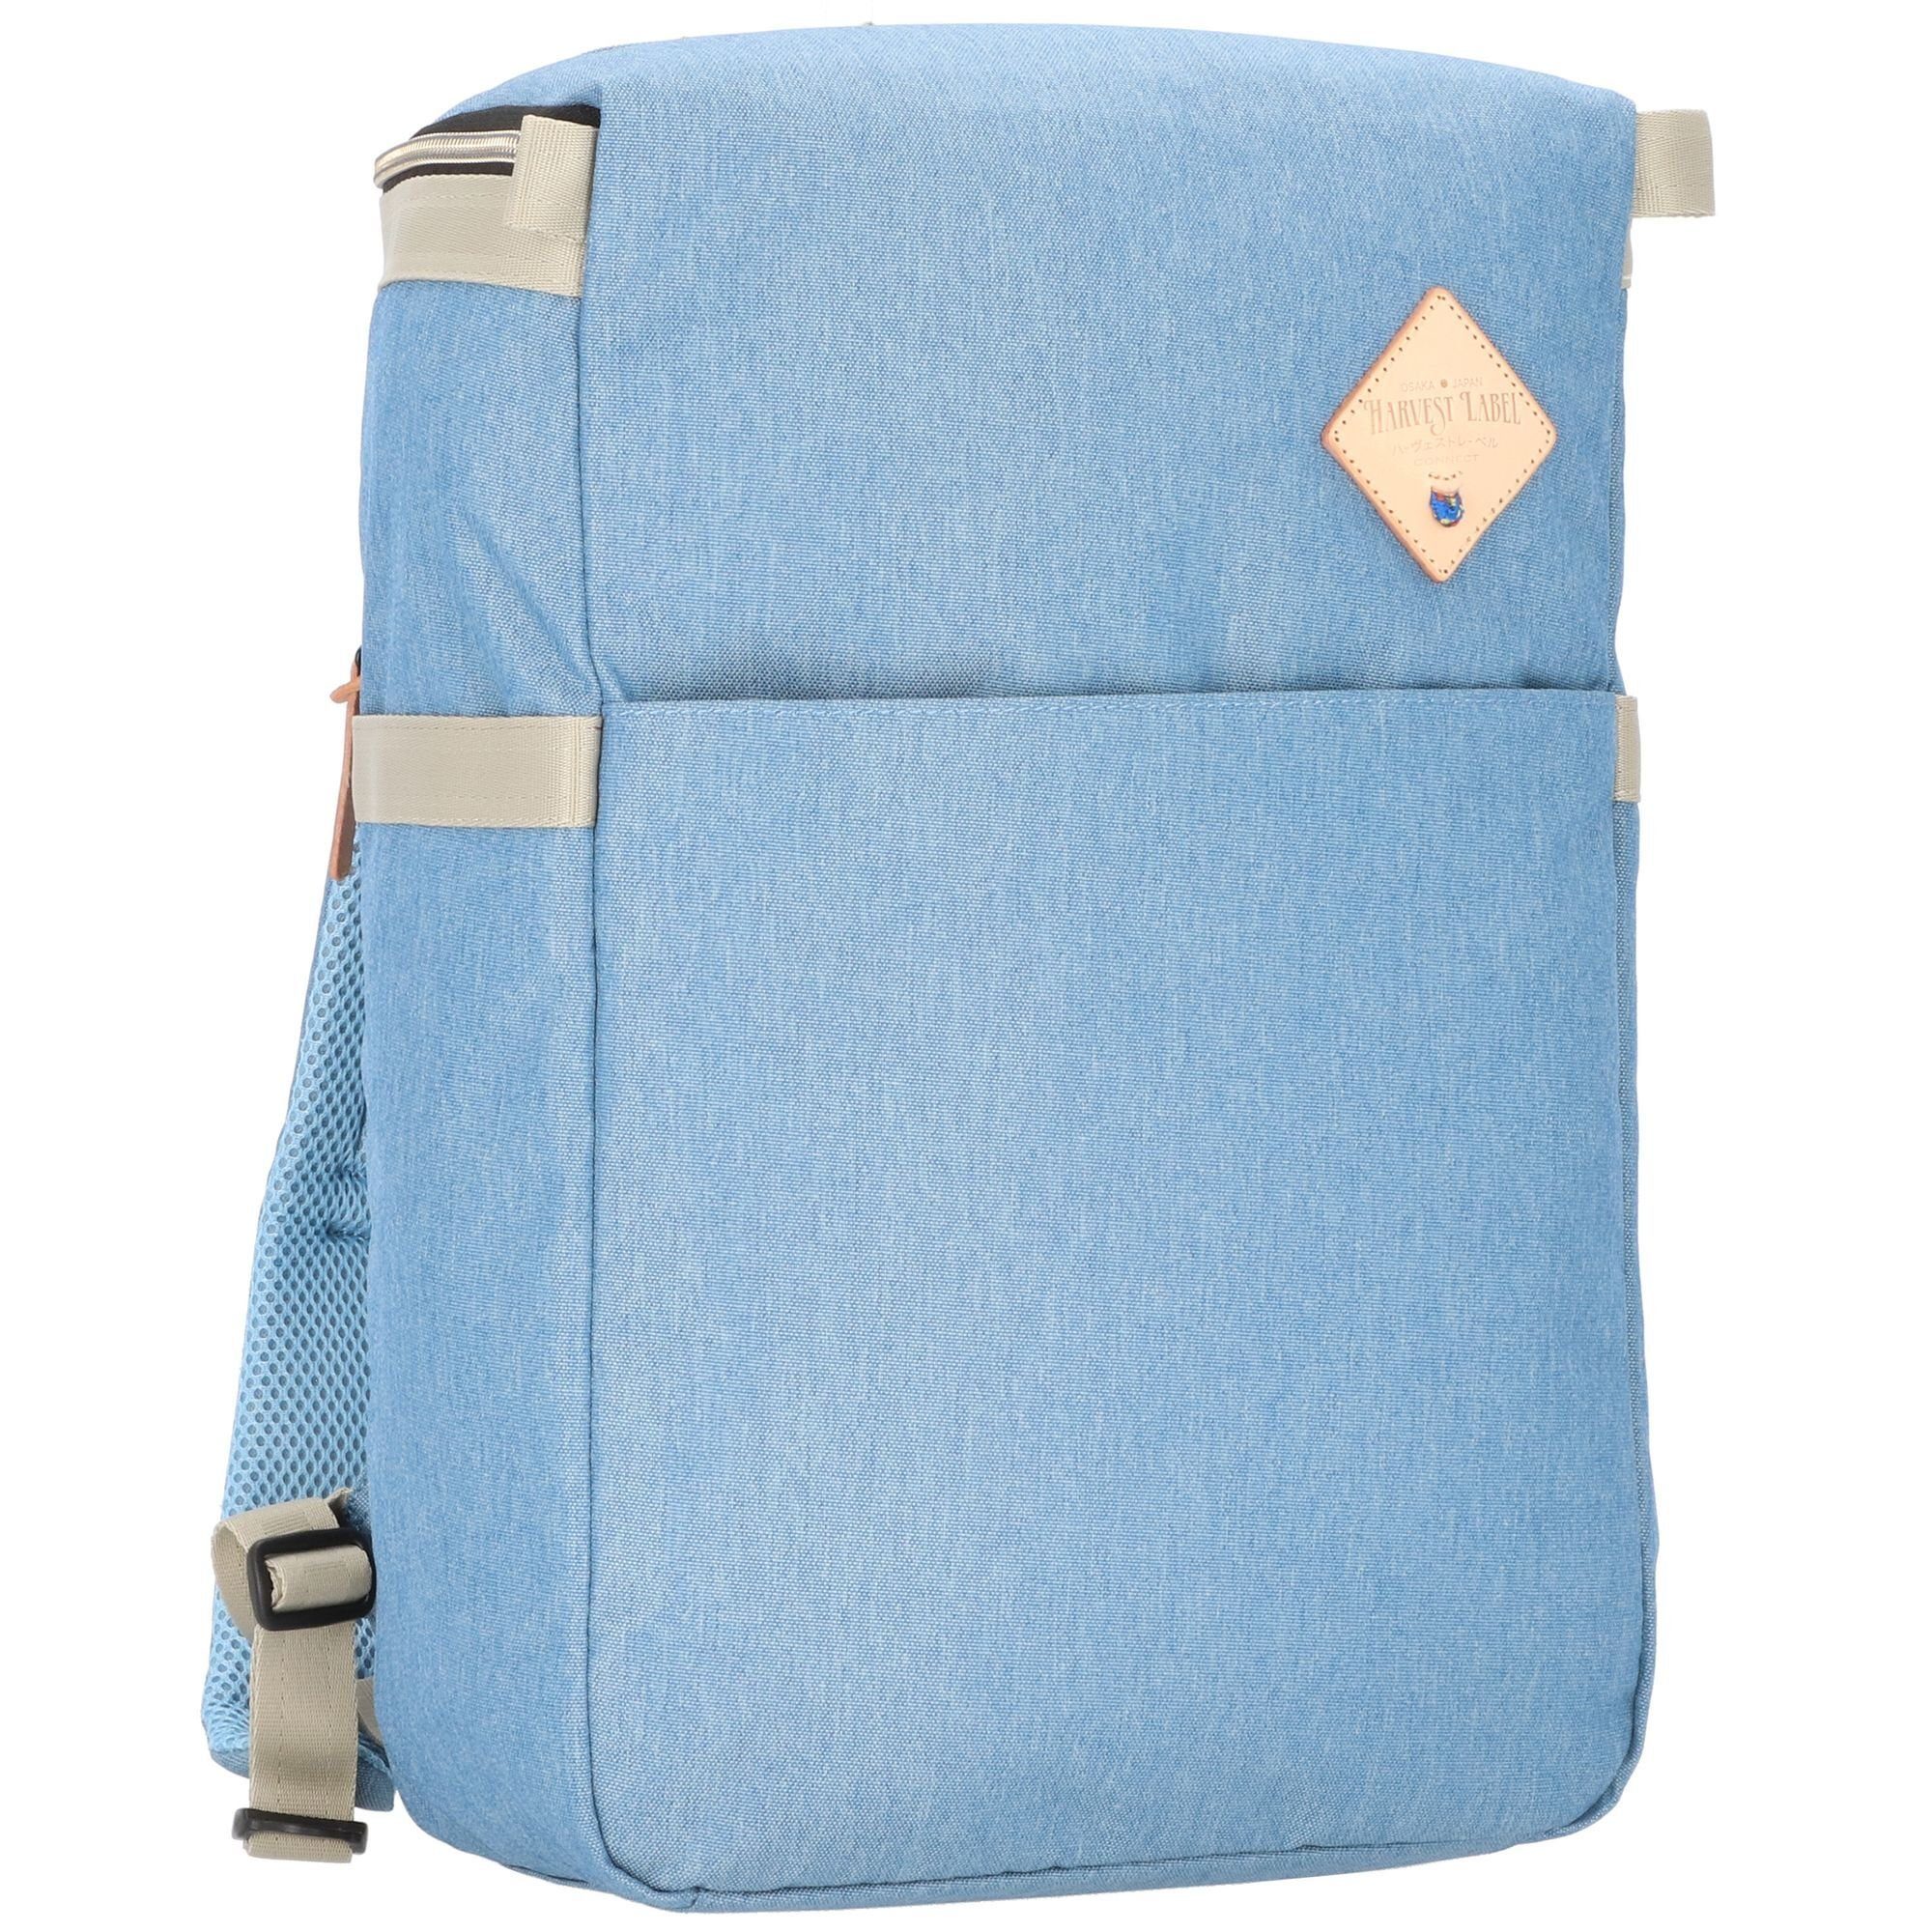 Daypack, blue Polyester Harvest Label